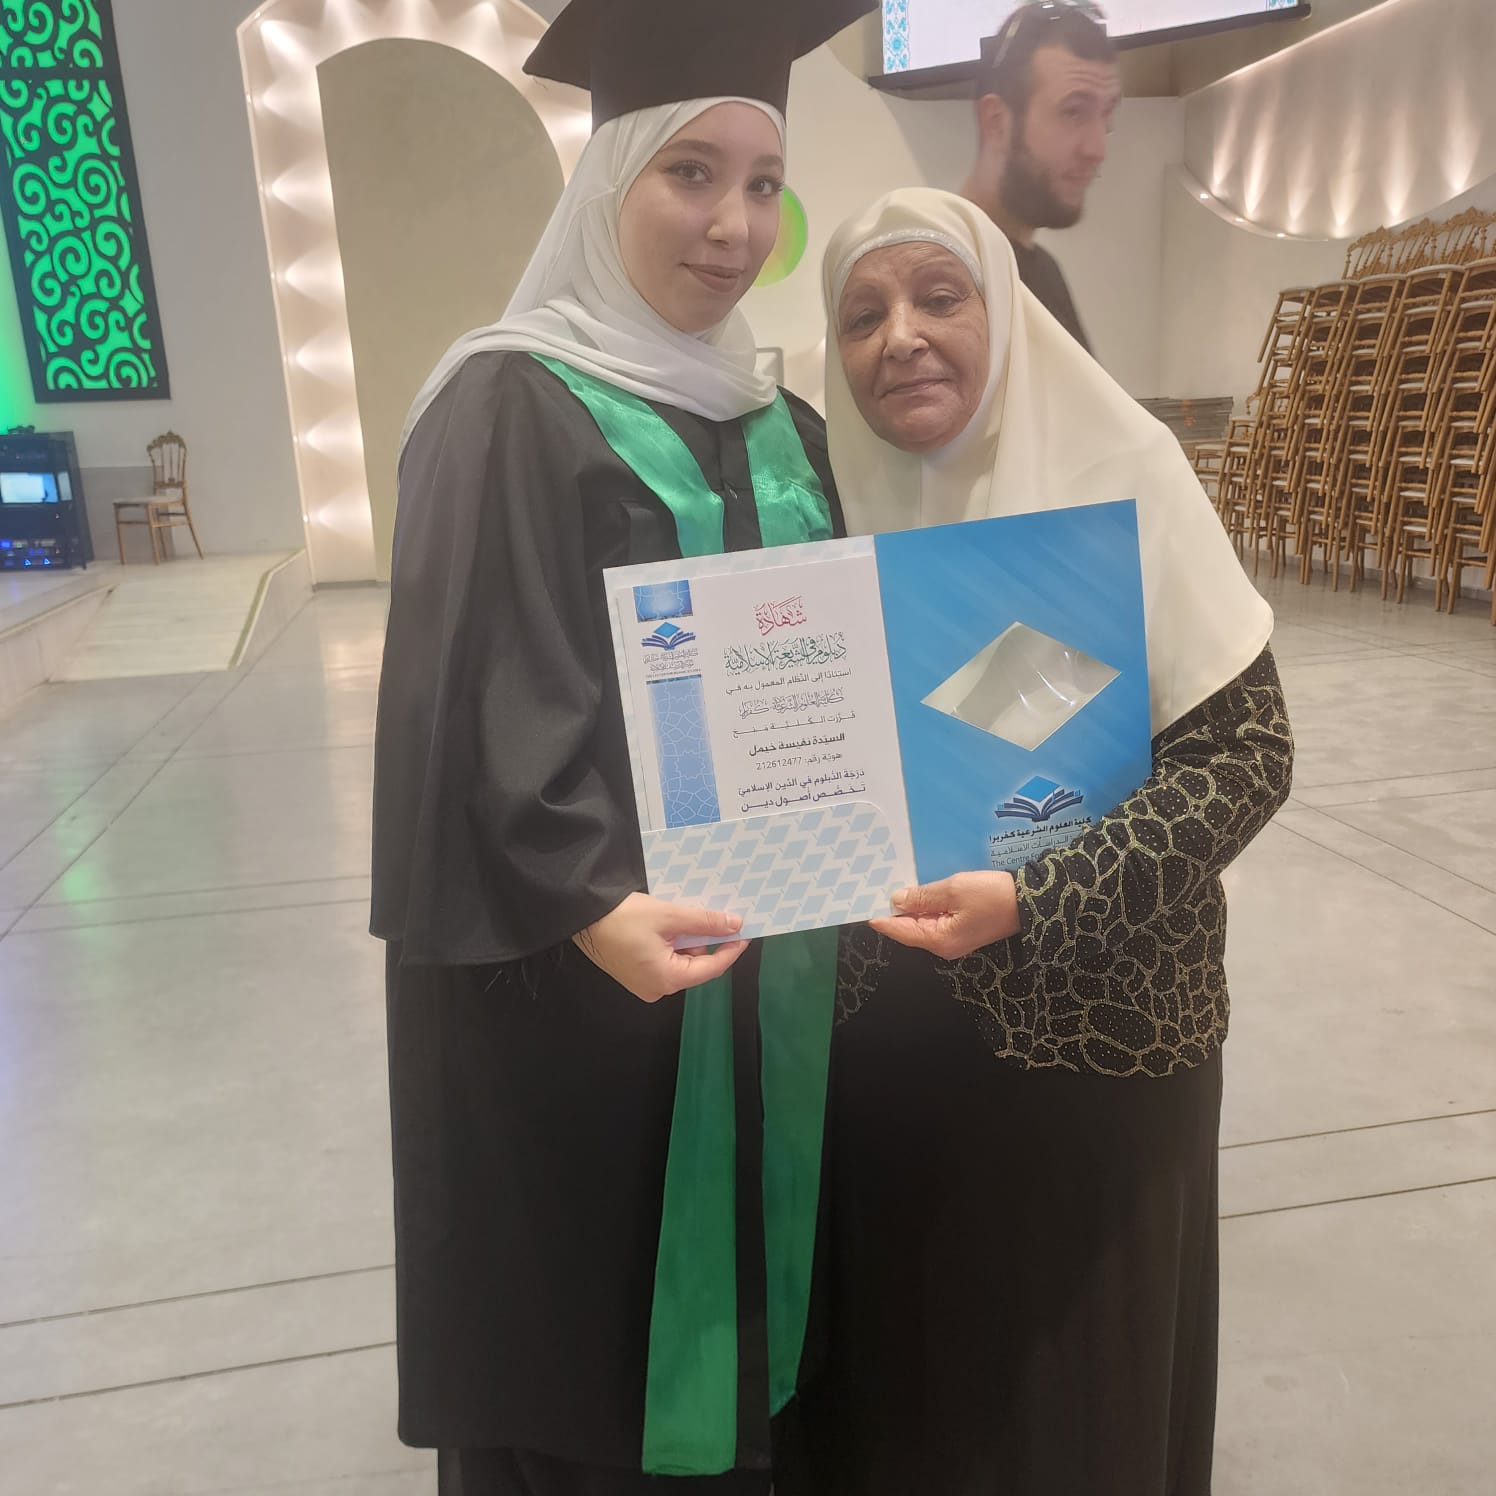  تهنئة للطالبة نفيسة خيمل بمناسبة تخرجها من كلية العلوم الشرعية كفربرا